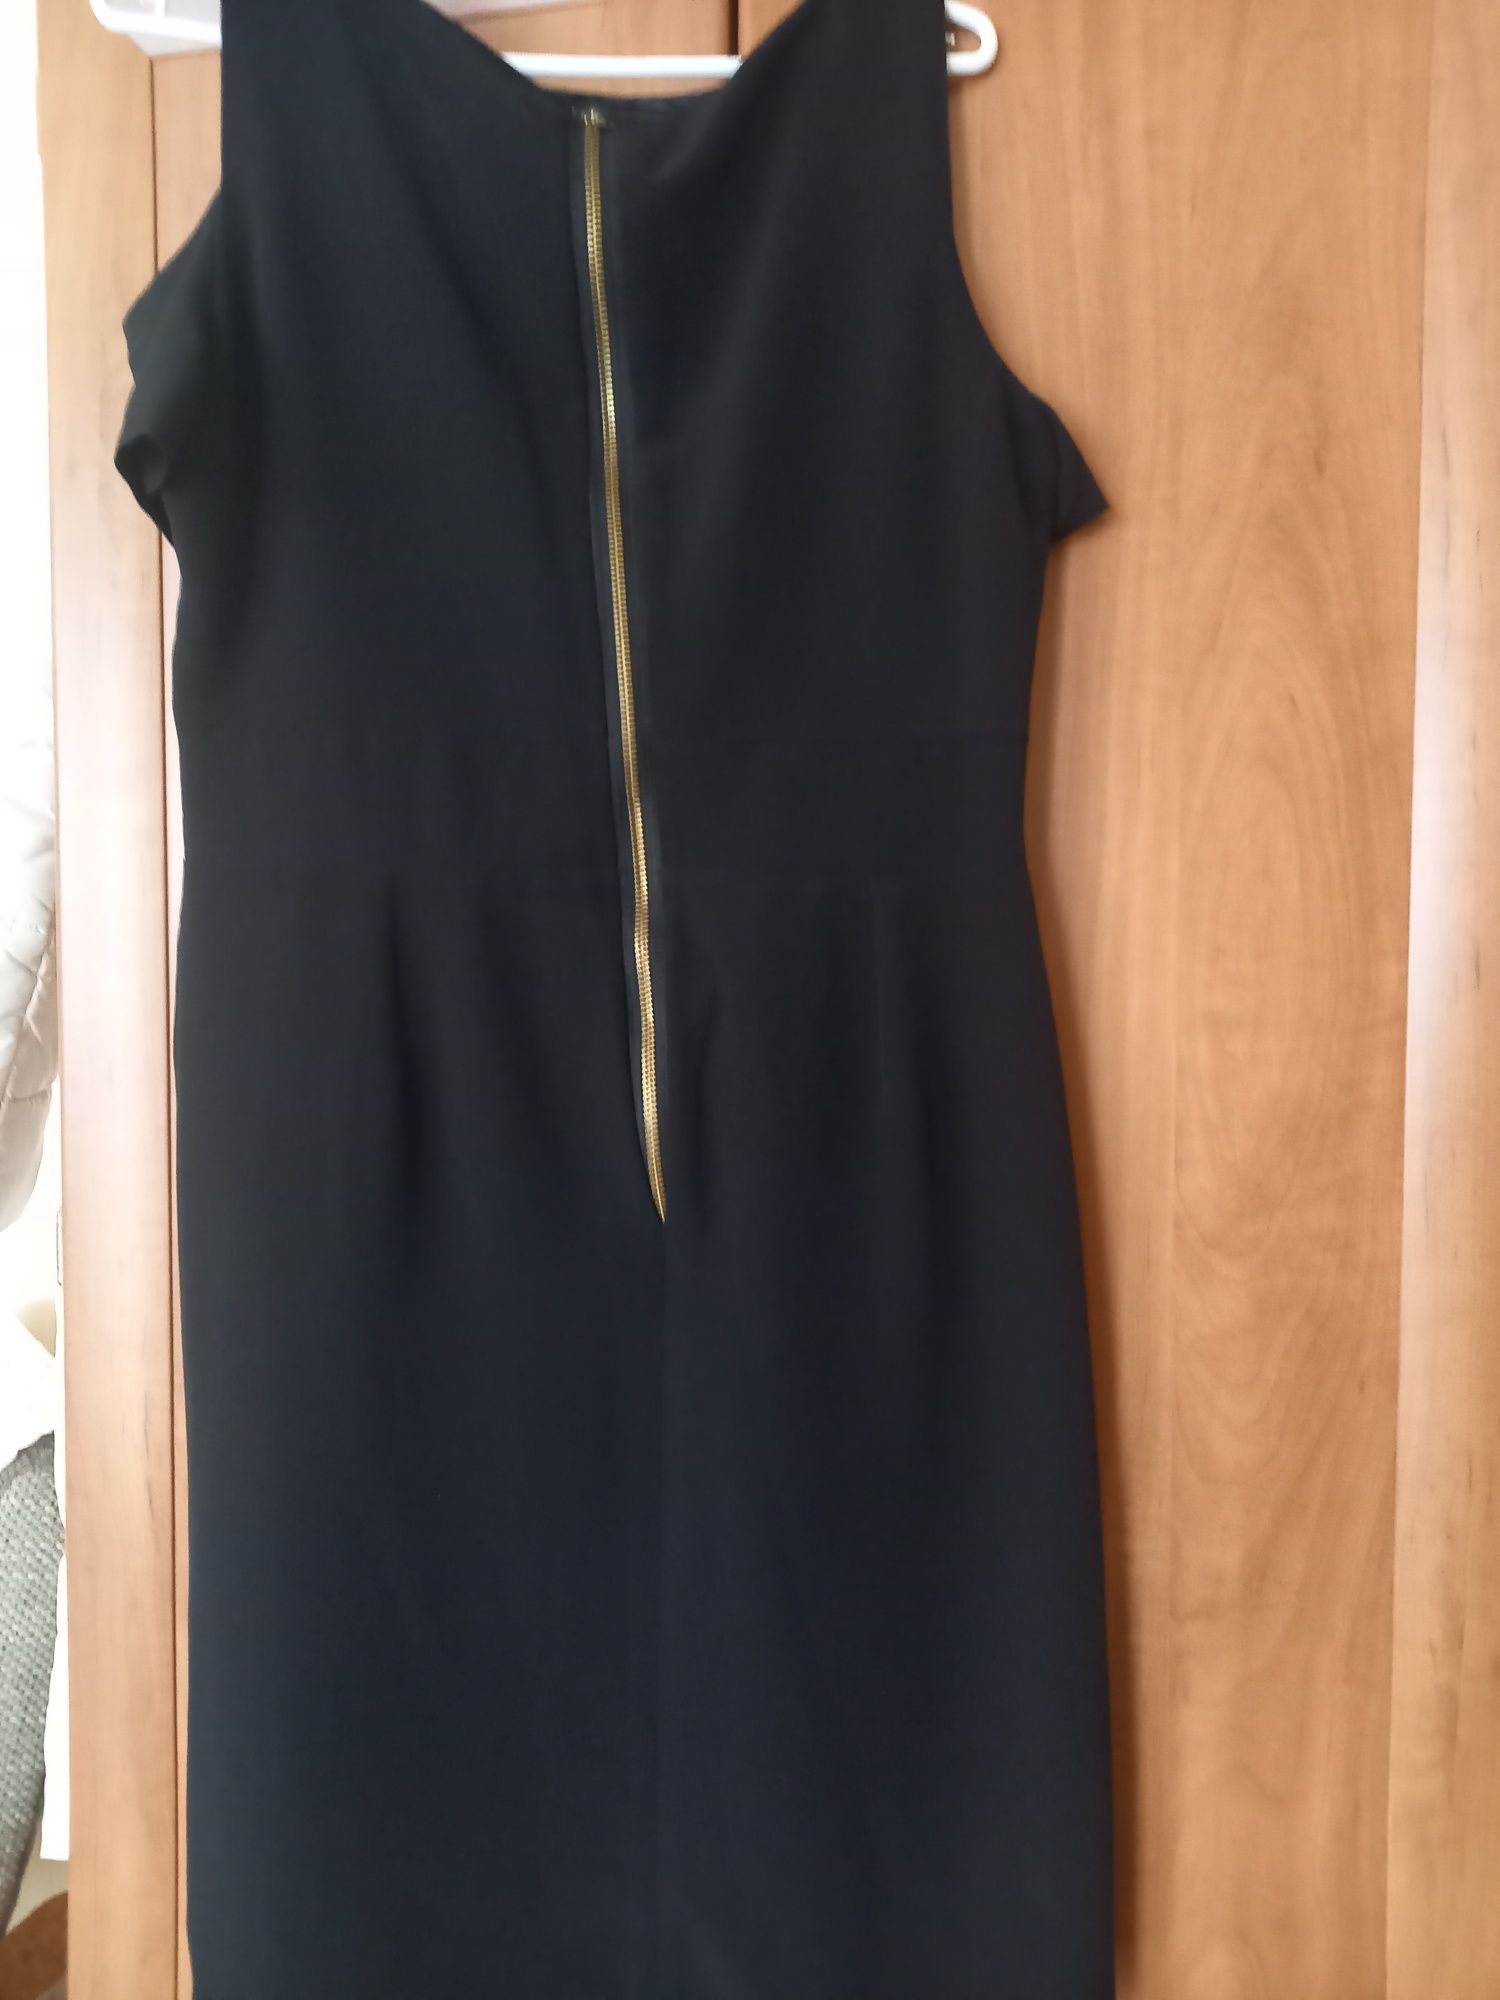 Czarna sukienka z krótkim opuszczanym rękawkiem firmy F&F rozmiar 12